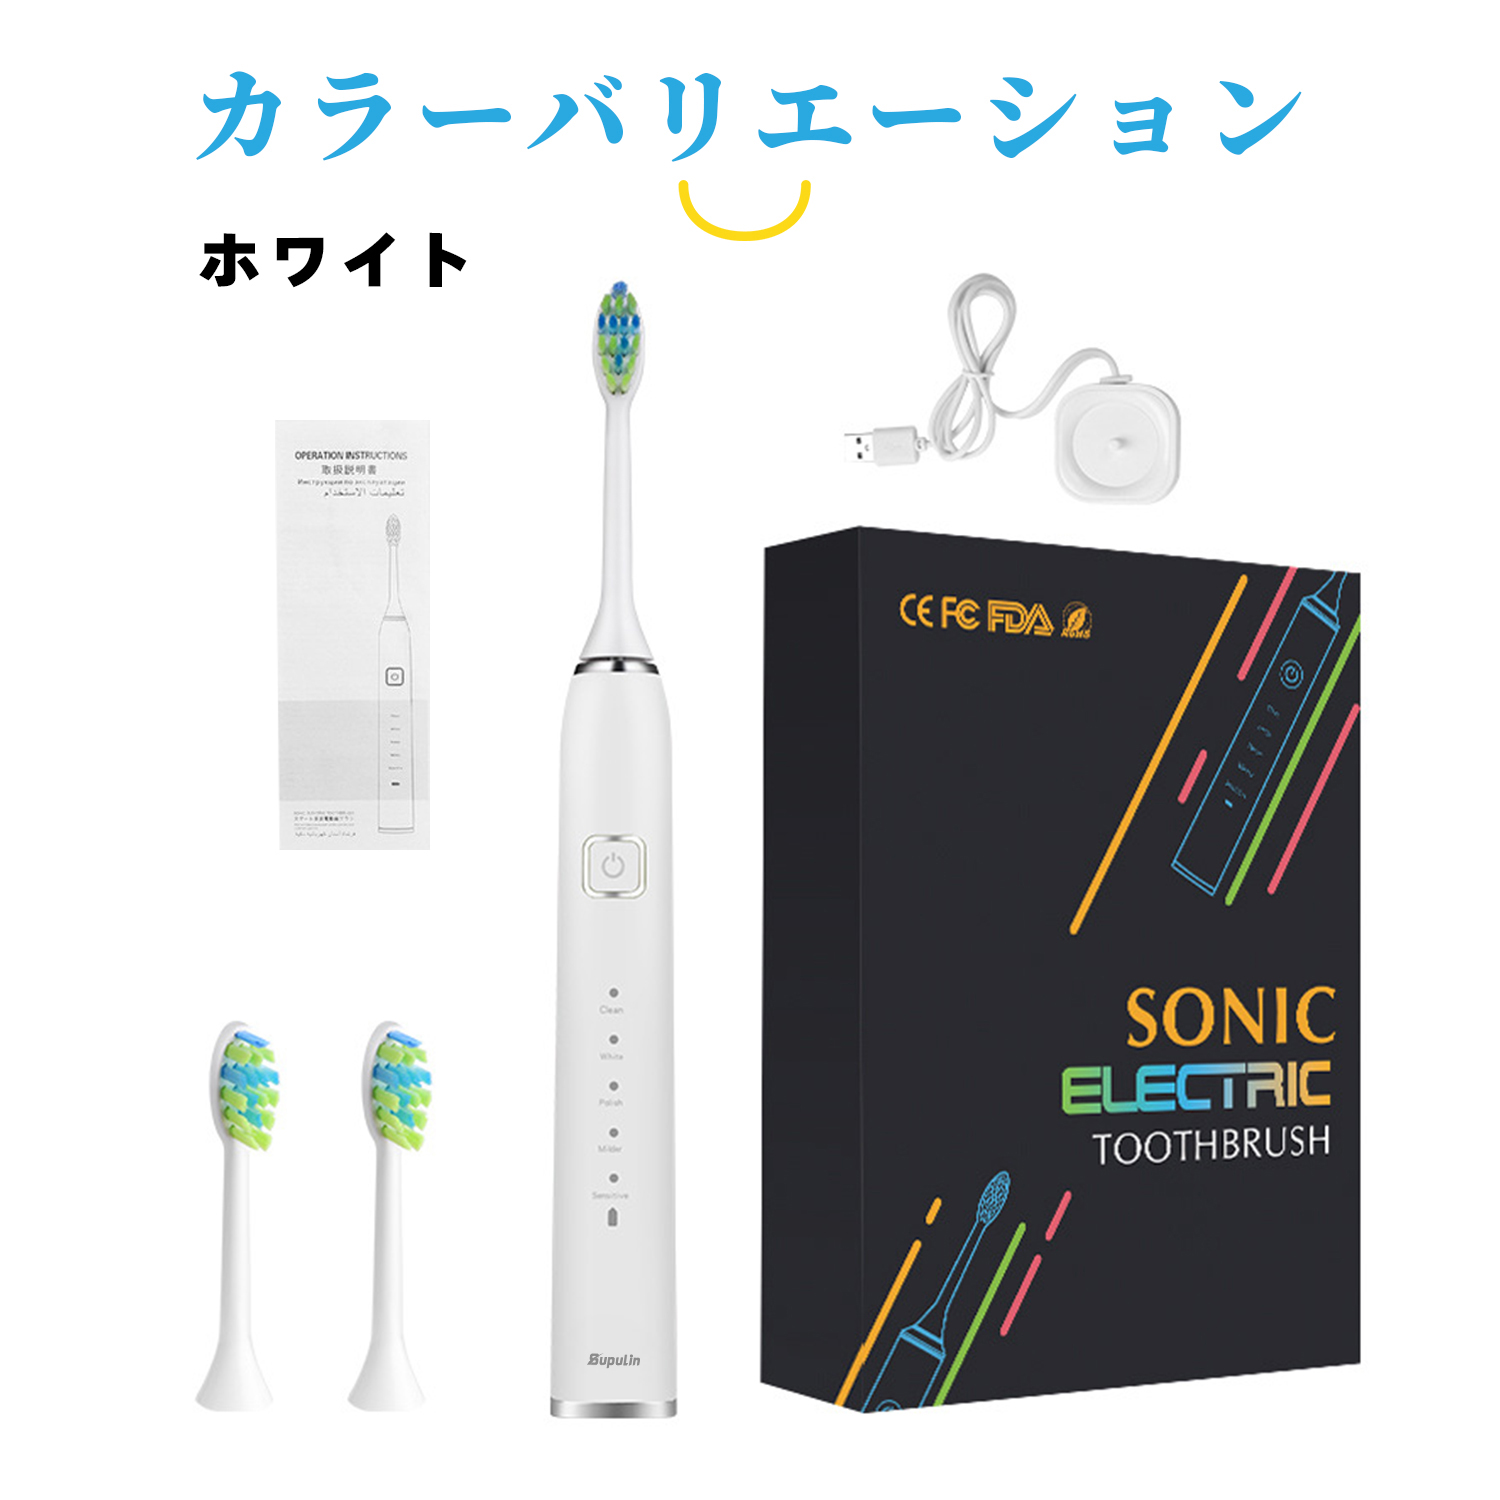 電動歯ブラシ 音波式歯ブラシ 歯ブラシ